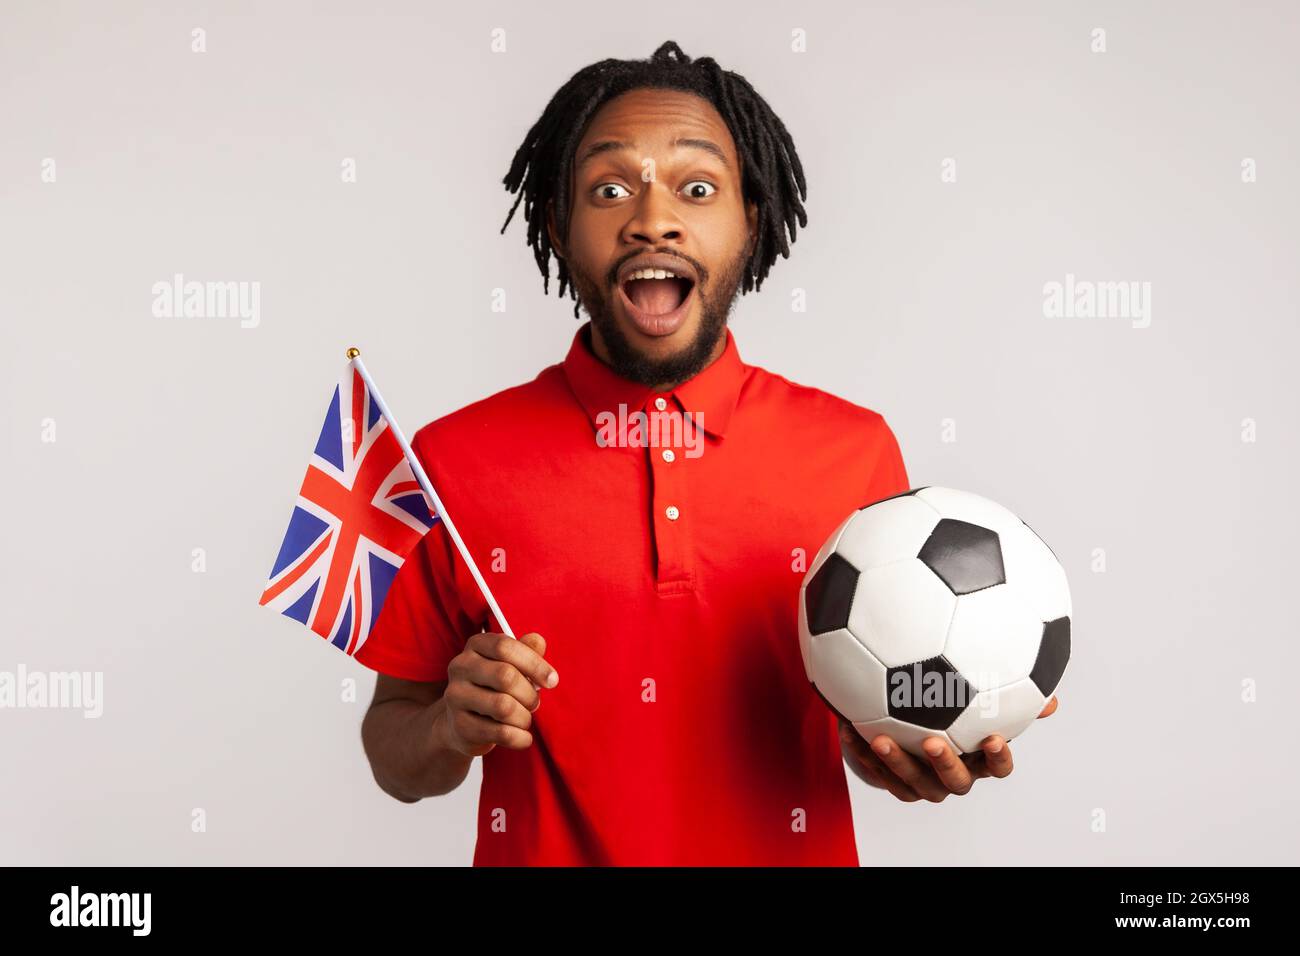 Un homme émerveillé avec des dreadlocks portant un t-shirt rouge de style décontracté, tenant le drapeau britannique et le ballon de football noir et blanc, ligue de football unie. Prise de vue en studio isolée sur fond gris. Banque D'Images